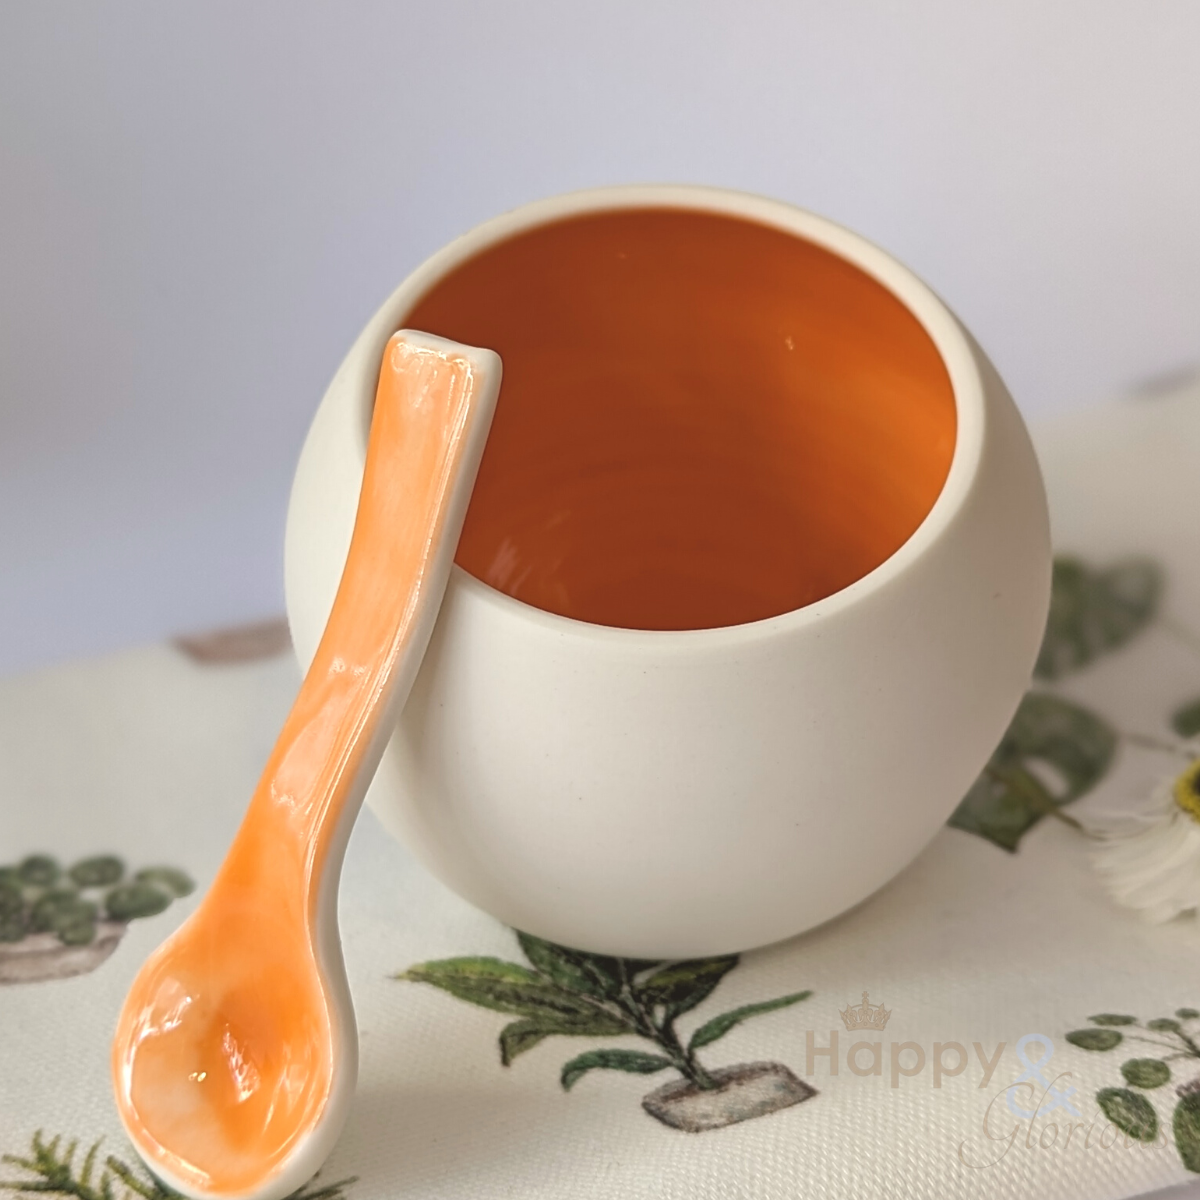 Orange porcelain salt pig & spoon